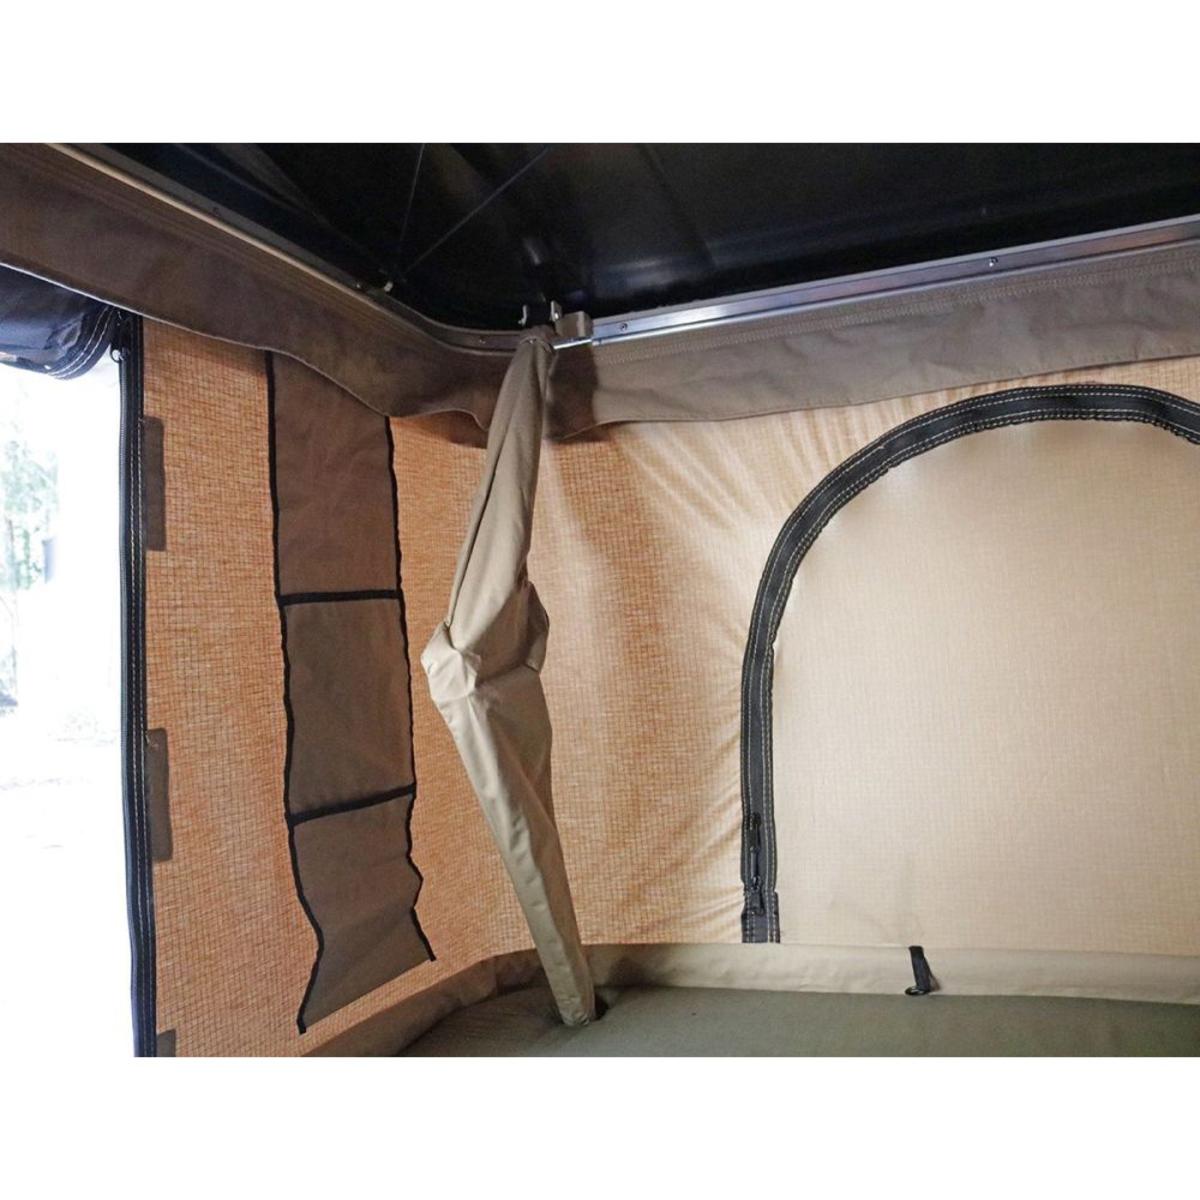 Trustmade Black Hard Shell Beige Rooftop Tent 2mins Setup 100% Waterproof 50mm Mattress